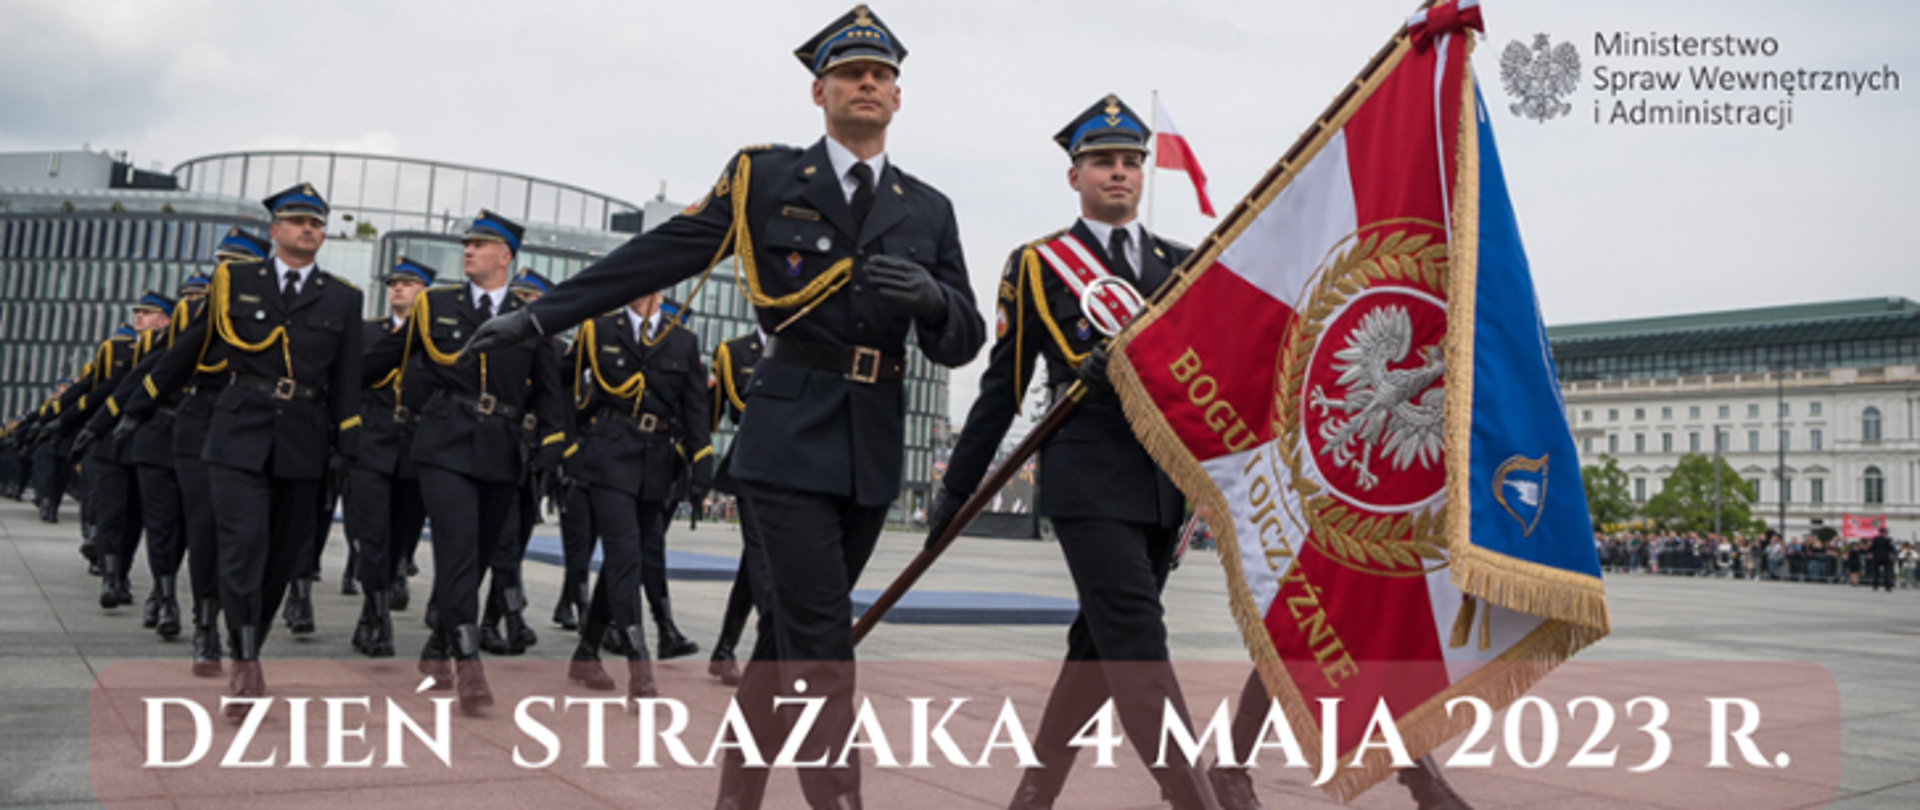 Zdjęcie wykonane na w Warszawie na Placu Marszałka Józefa Piłsudskiego. Na zdjęciu widać uroczystą defiladę pododdziałów Państwowej Straży Pożarnej z okazji obchodów Dnia Strażaka. Na pierwszym planie widać poczet sztandarowy. Poczet tworzy trzech funkcjonariuszy ubranych w mundury galowe. Środkowy z nich w rękach trzyma sztandar. Dodatkowo jego mundur przepasany jest biało – czerwoną wstęgą. Za pocztem sztandarowym maszerują w czwórkach pozostali funkcjonariusze również ubrani w mundury galowe. W oddali widać zabudowania okalające plac, na którym odbywa się uroczystość. 